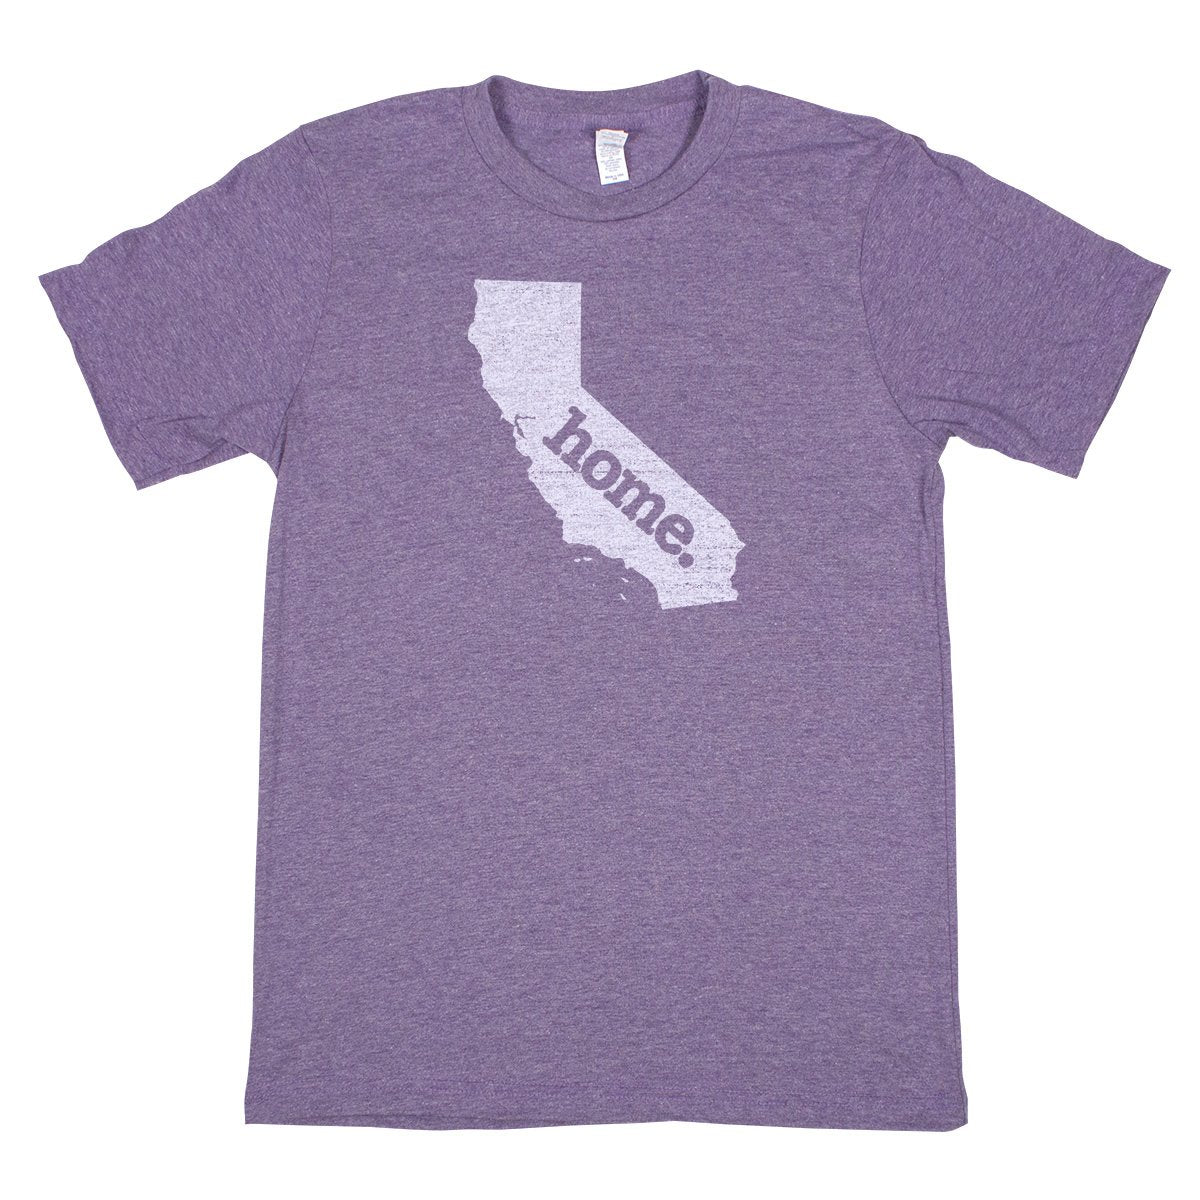 home. Men’s Unisex T-Shirt - Rhode Island